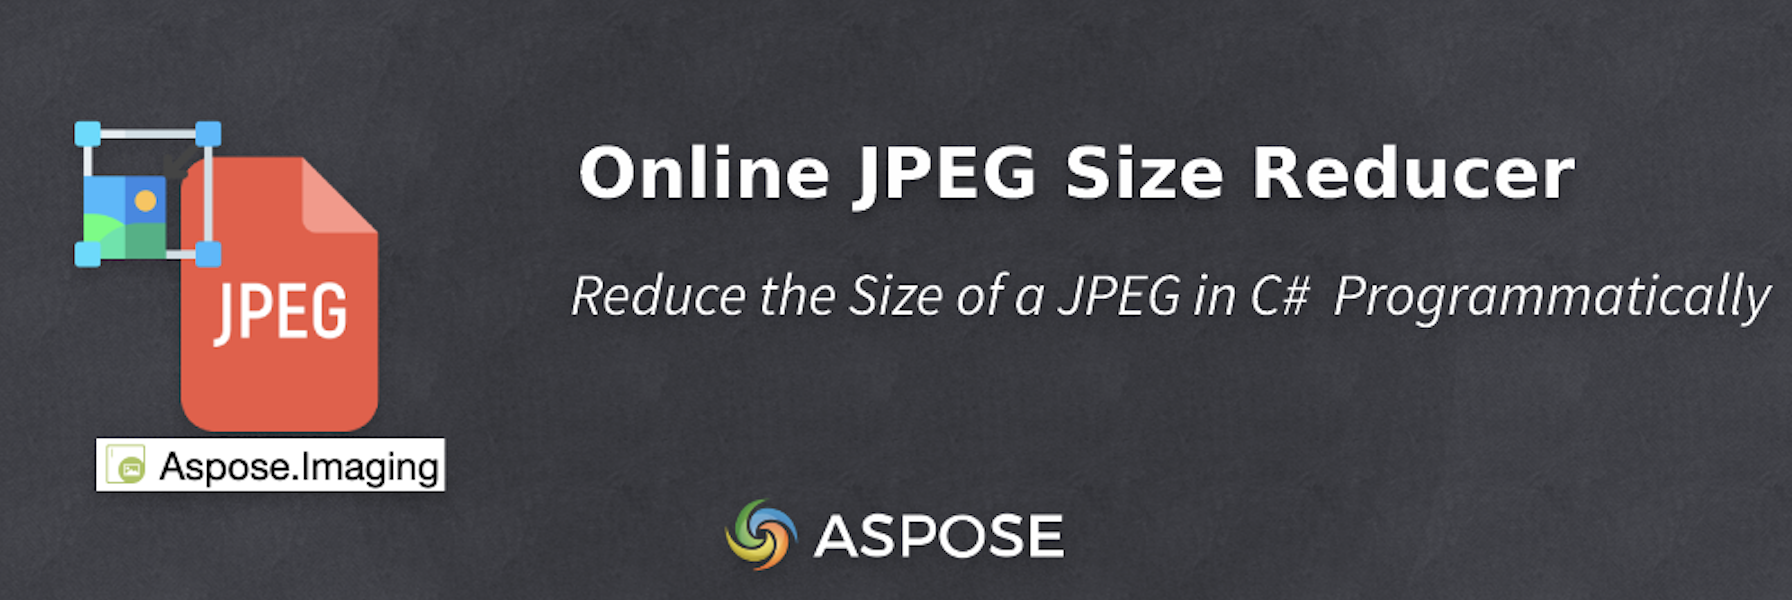 在 C# 中減少 JPEG 的大小 - 線上 JPEG Size Reducer